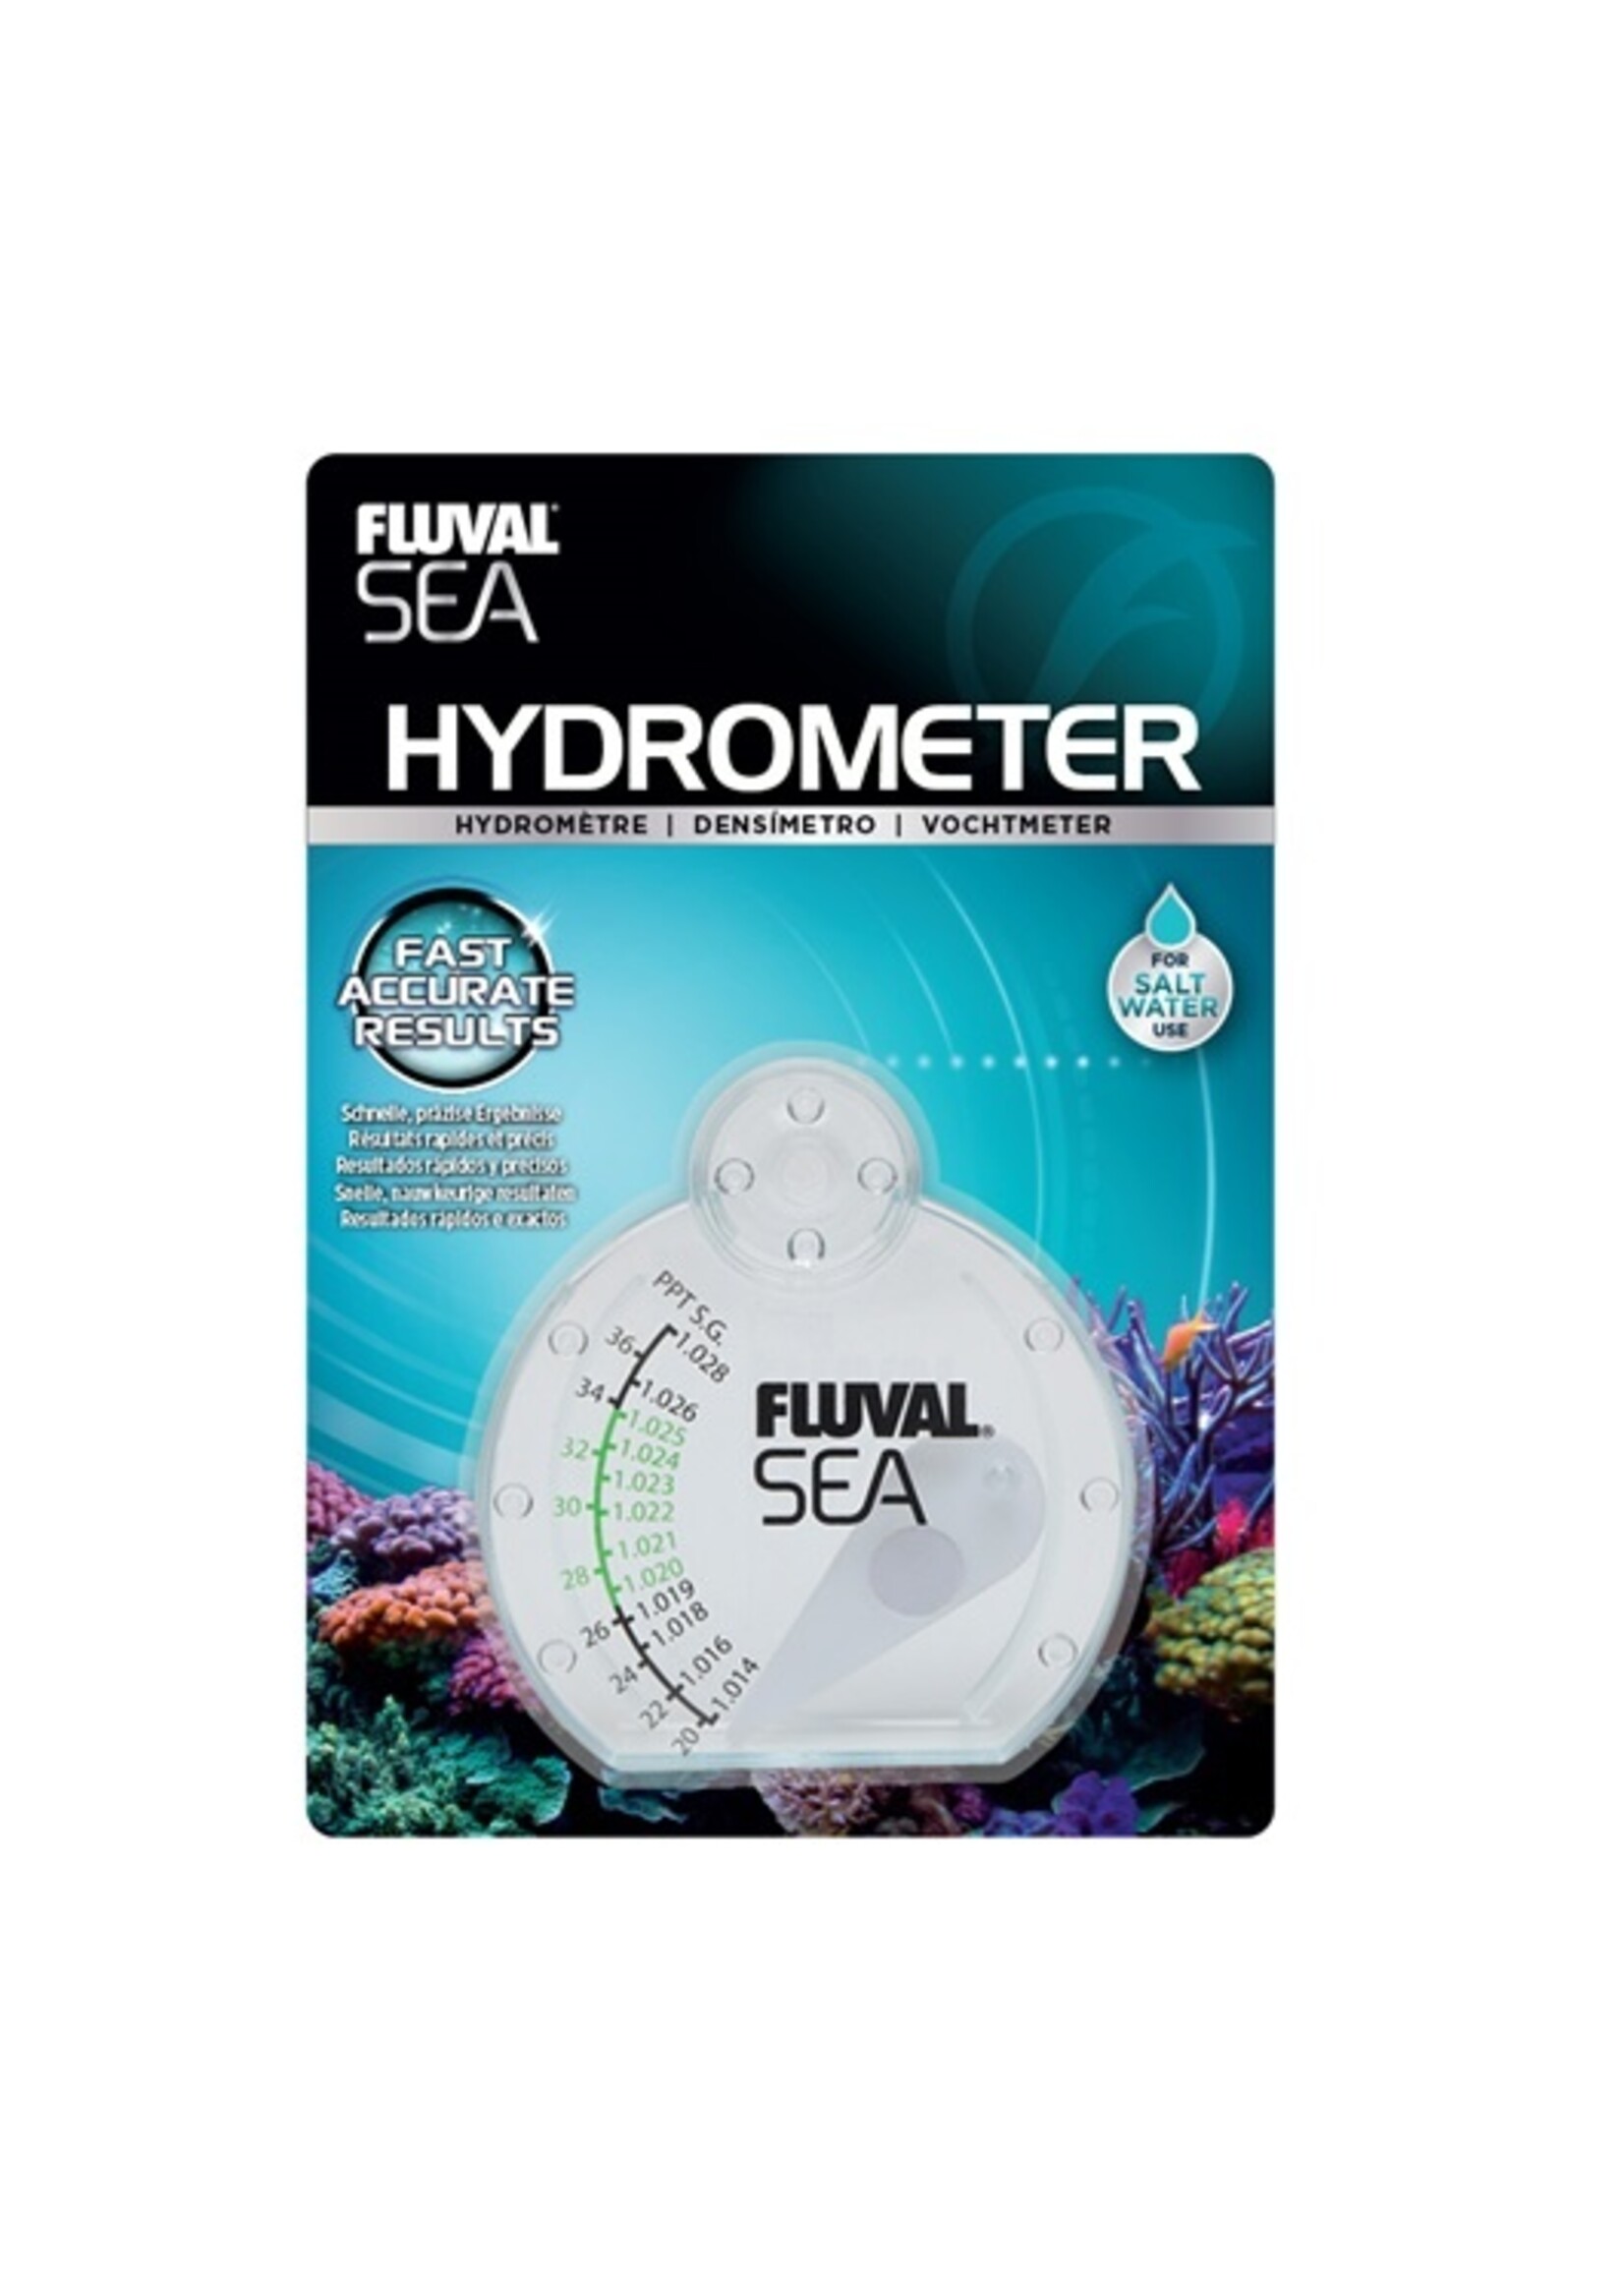 Fluval Sea Fluval Sea Hydrometer